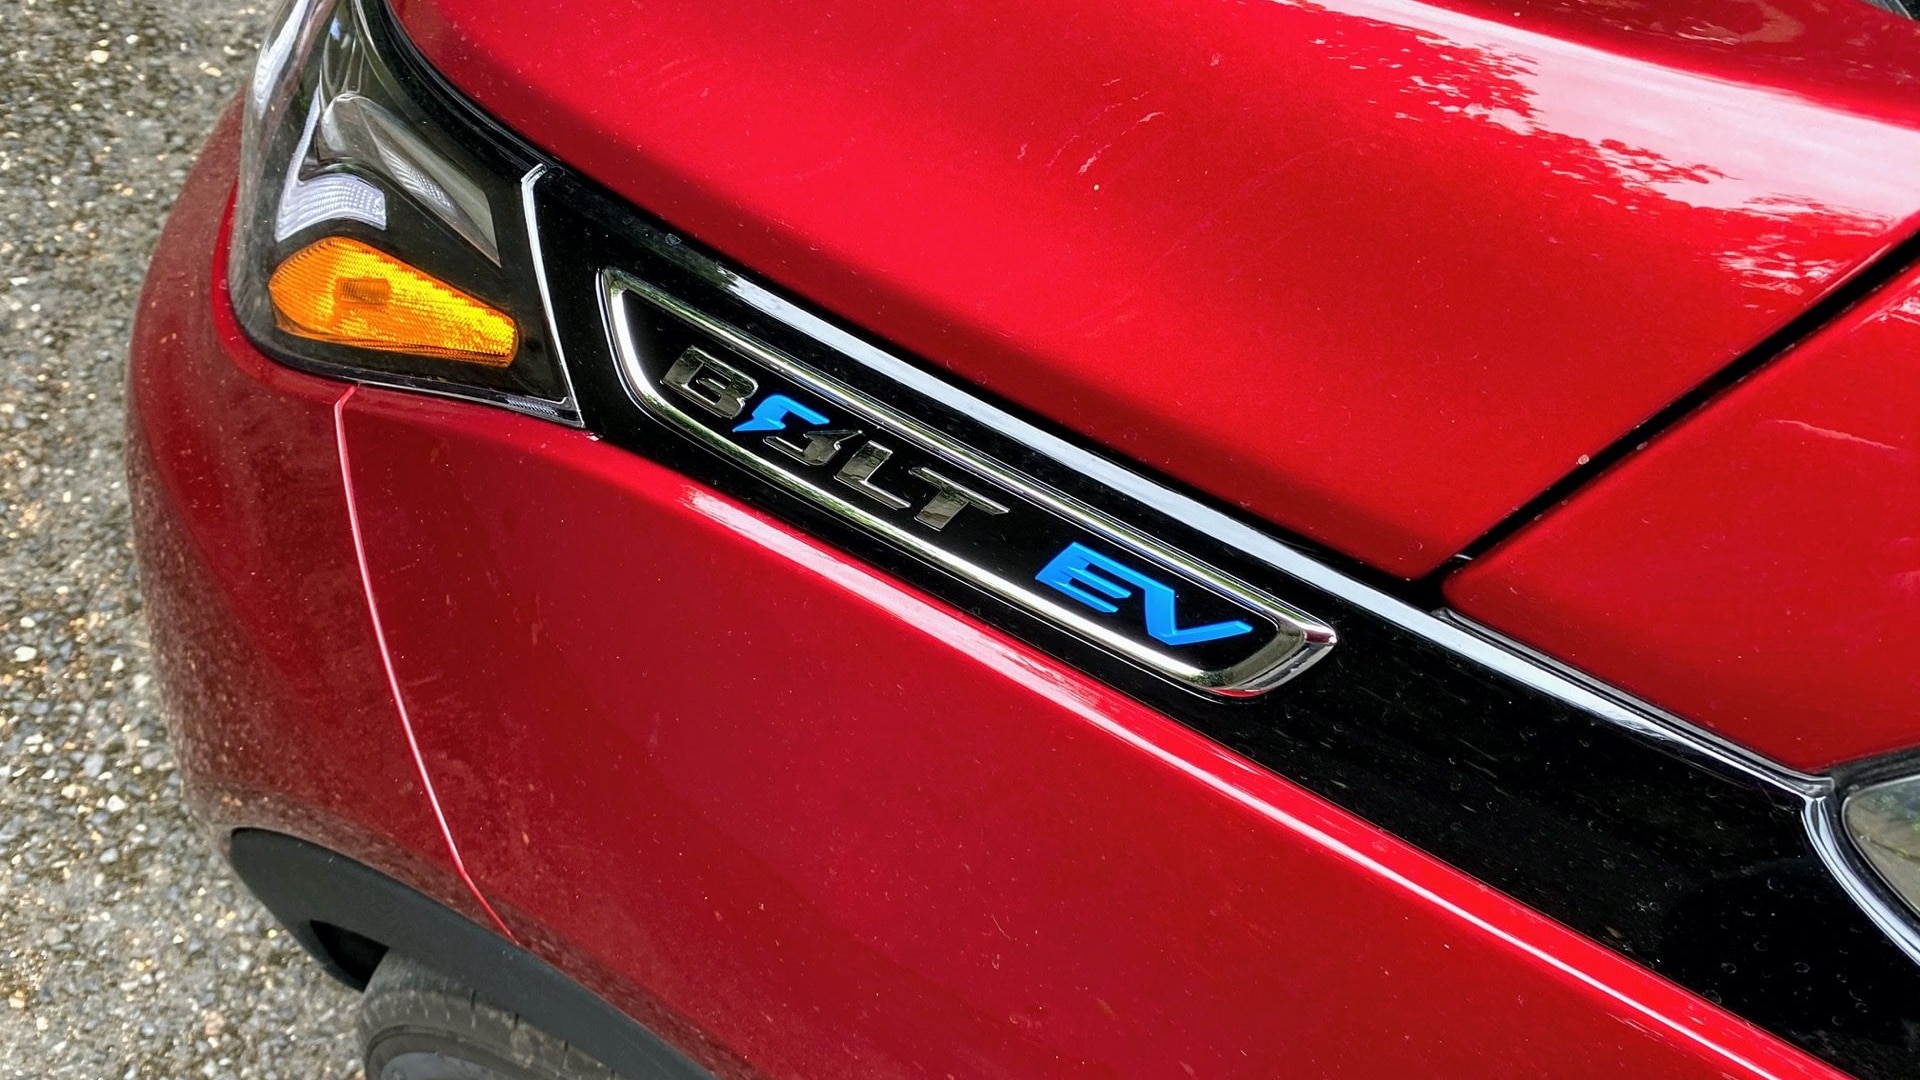 2020 Chevrolet Bolt EV review update  -  Portland OR